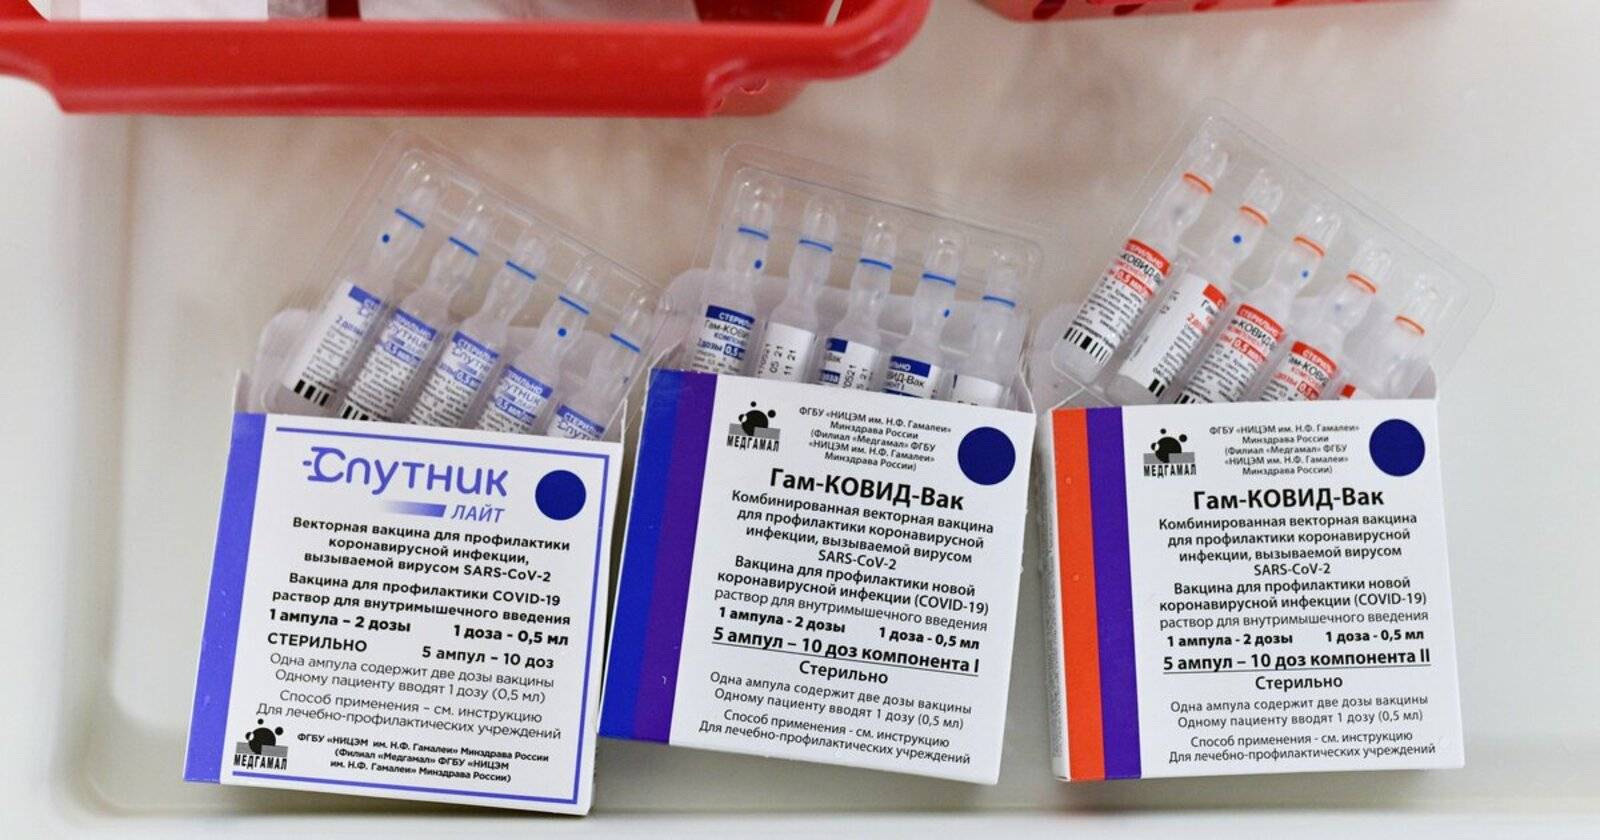 Коронавирус штамм сейчас. Вакцина от Covid-19 Спутник v. Спутник Лайт вакцина от коронавируса. Производители вакцин. Вакциная отткороновируса.